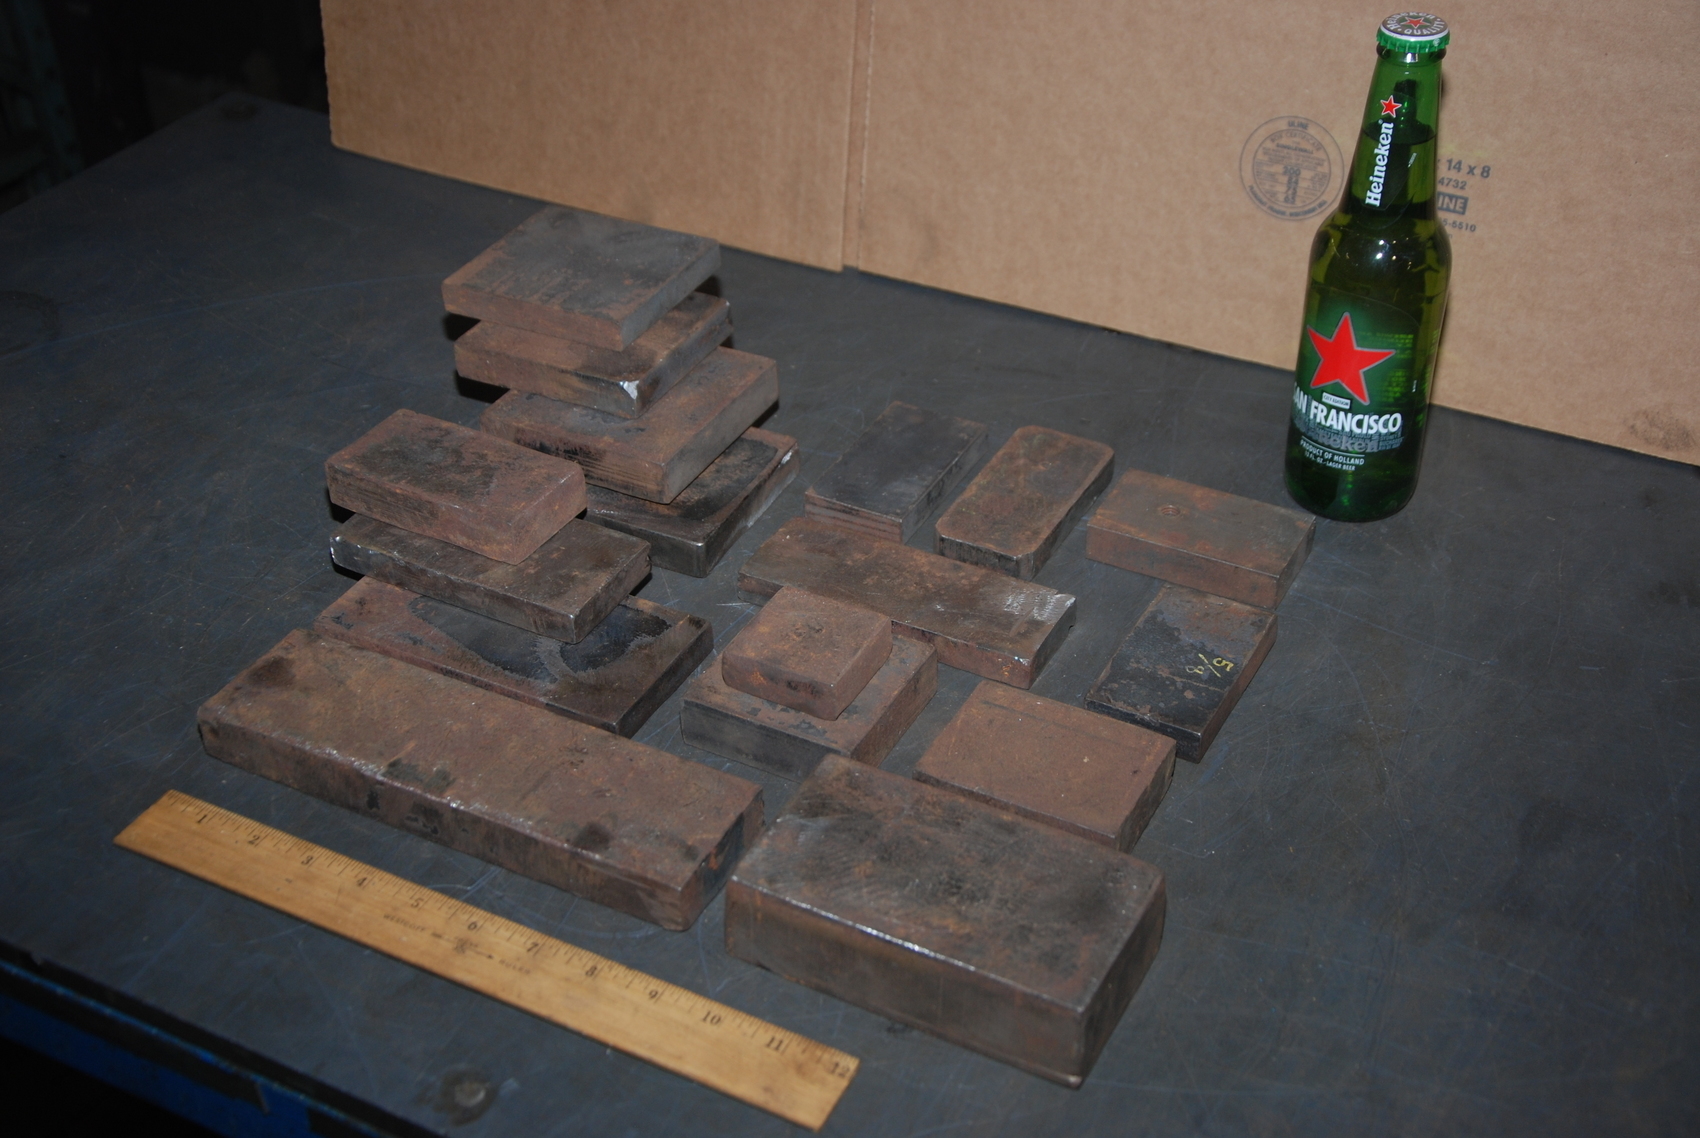 Lot of 17 steel Rectangular Bars for blacksmith anvil,45 lbs